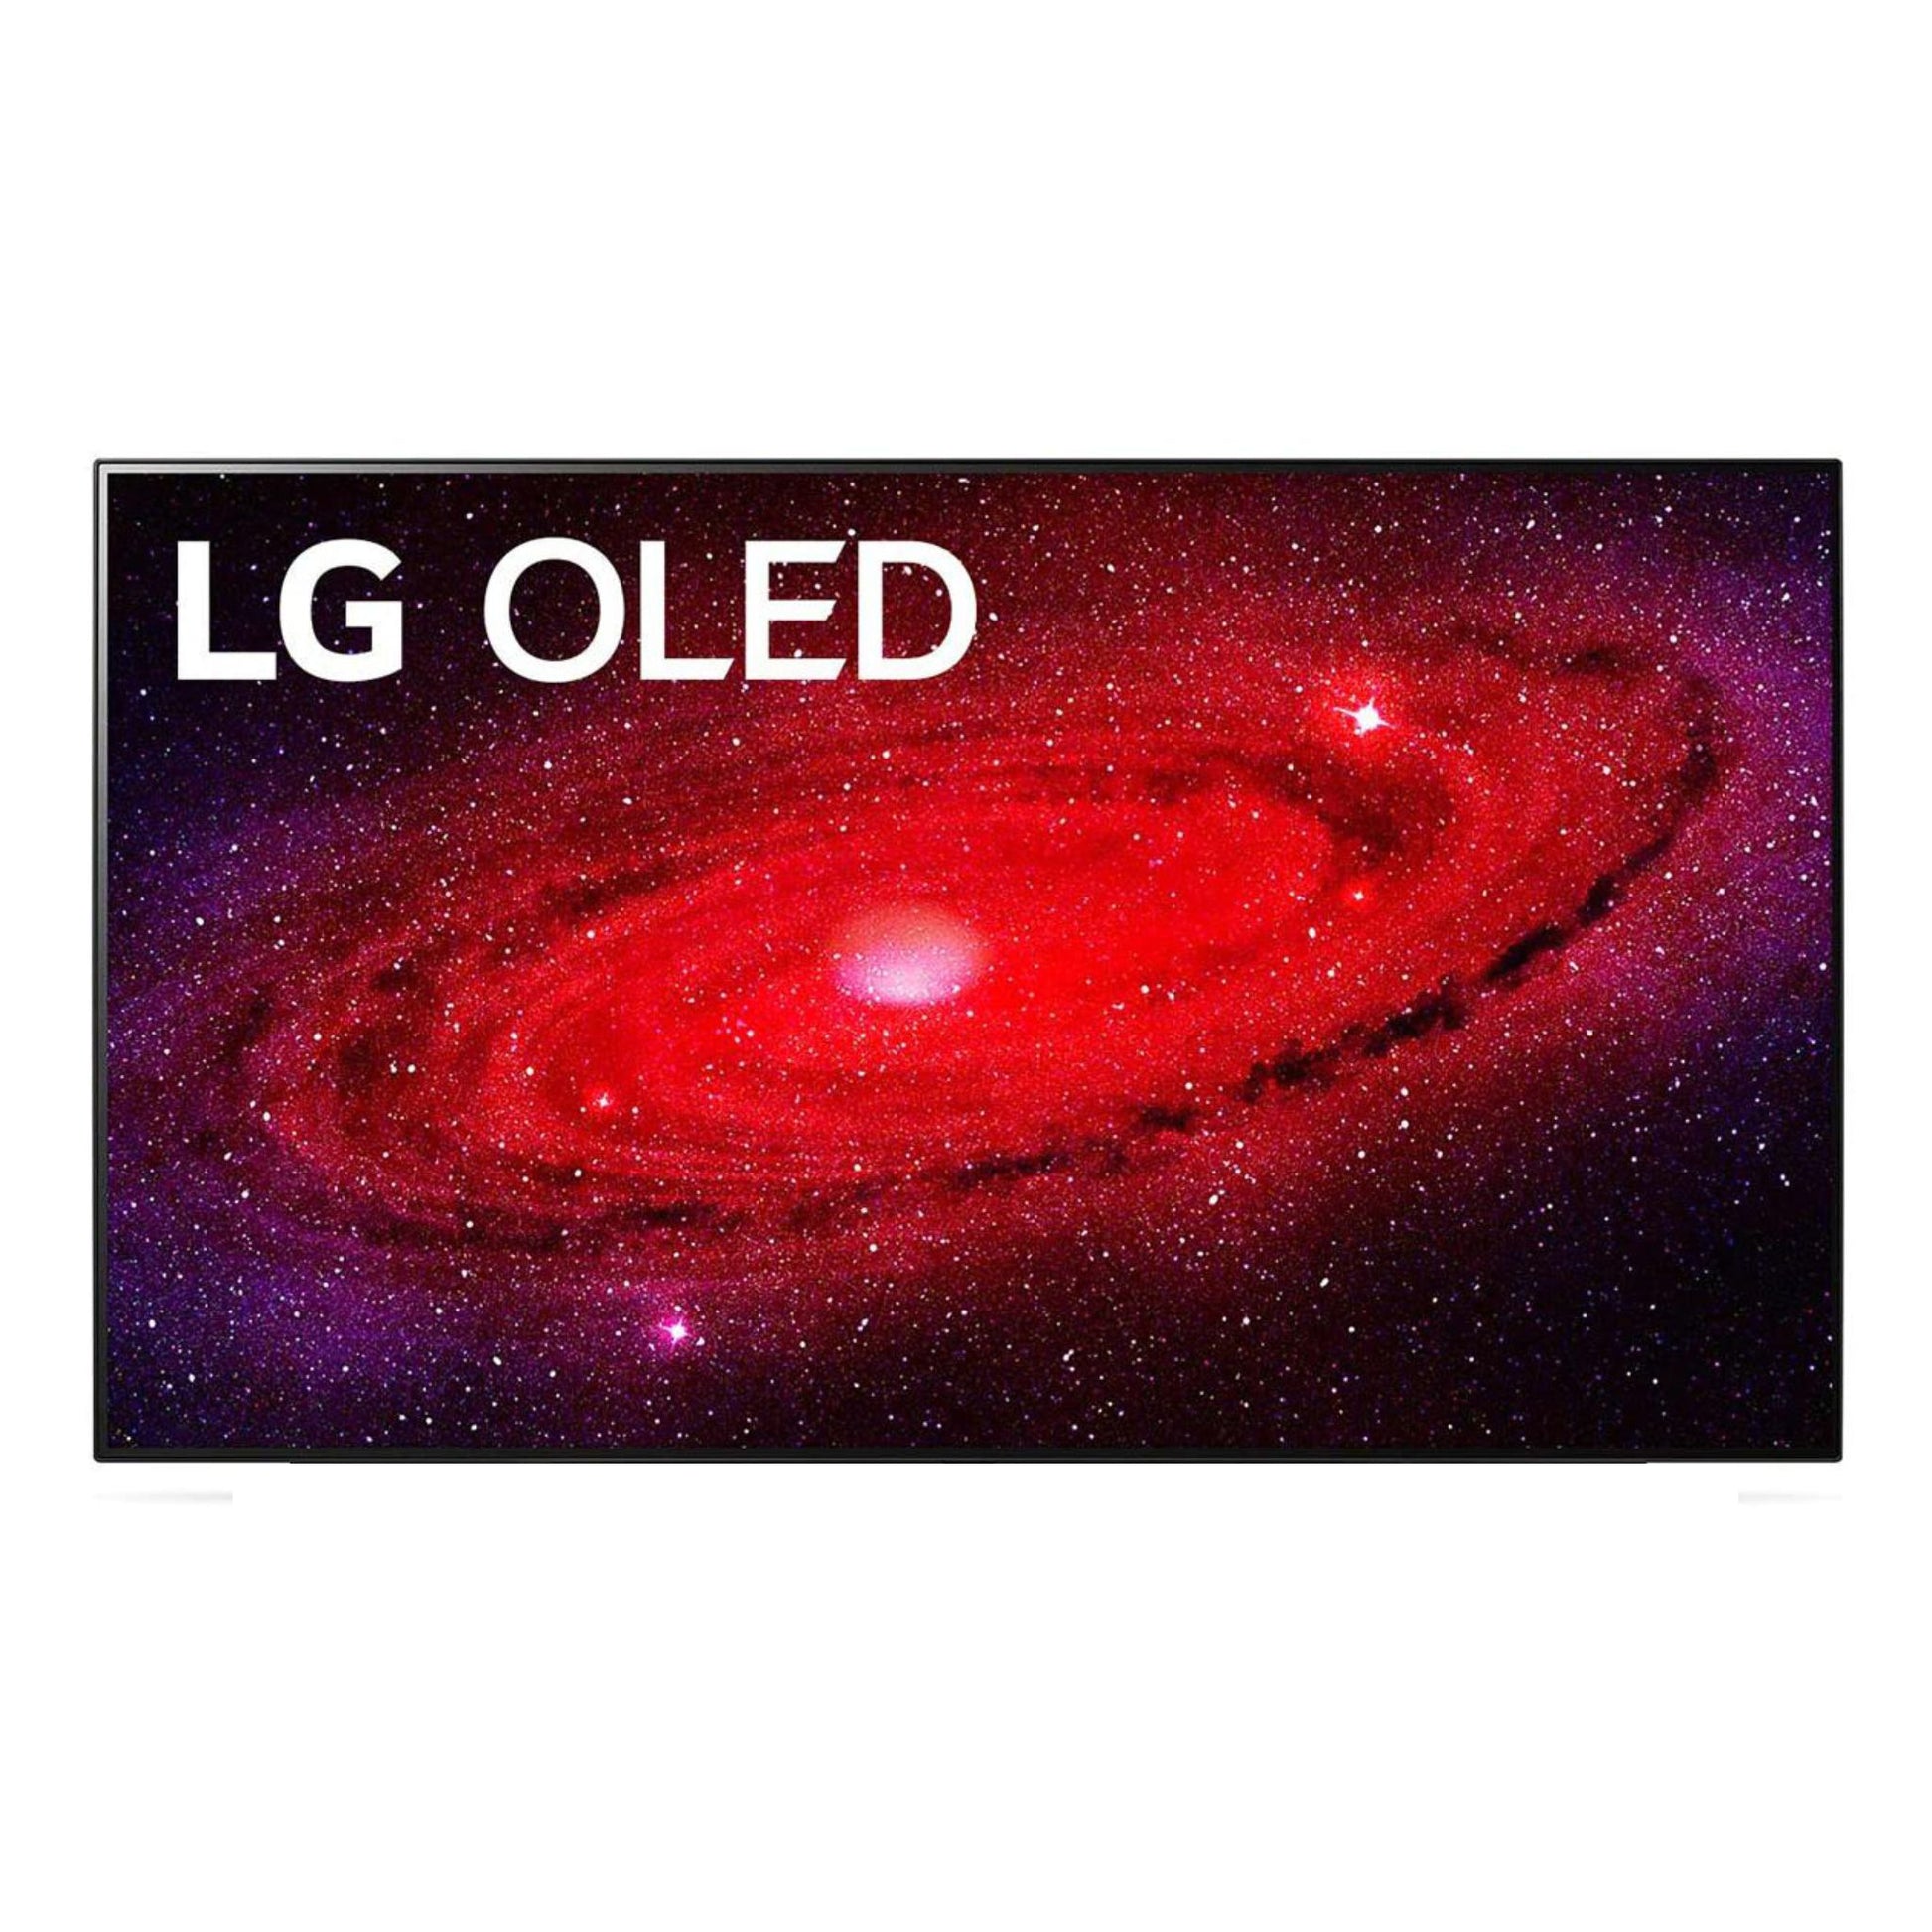 LG 77 inch OLED Smart TV, 77CX